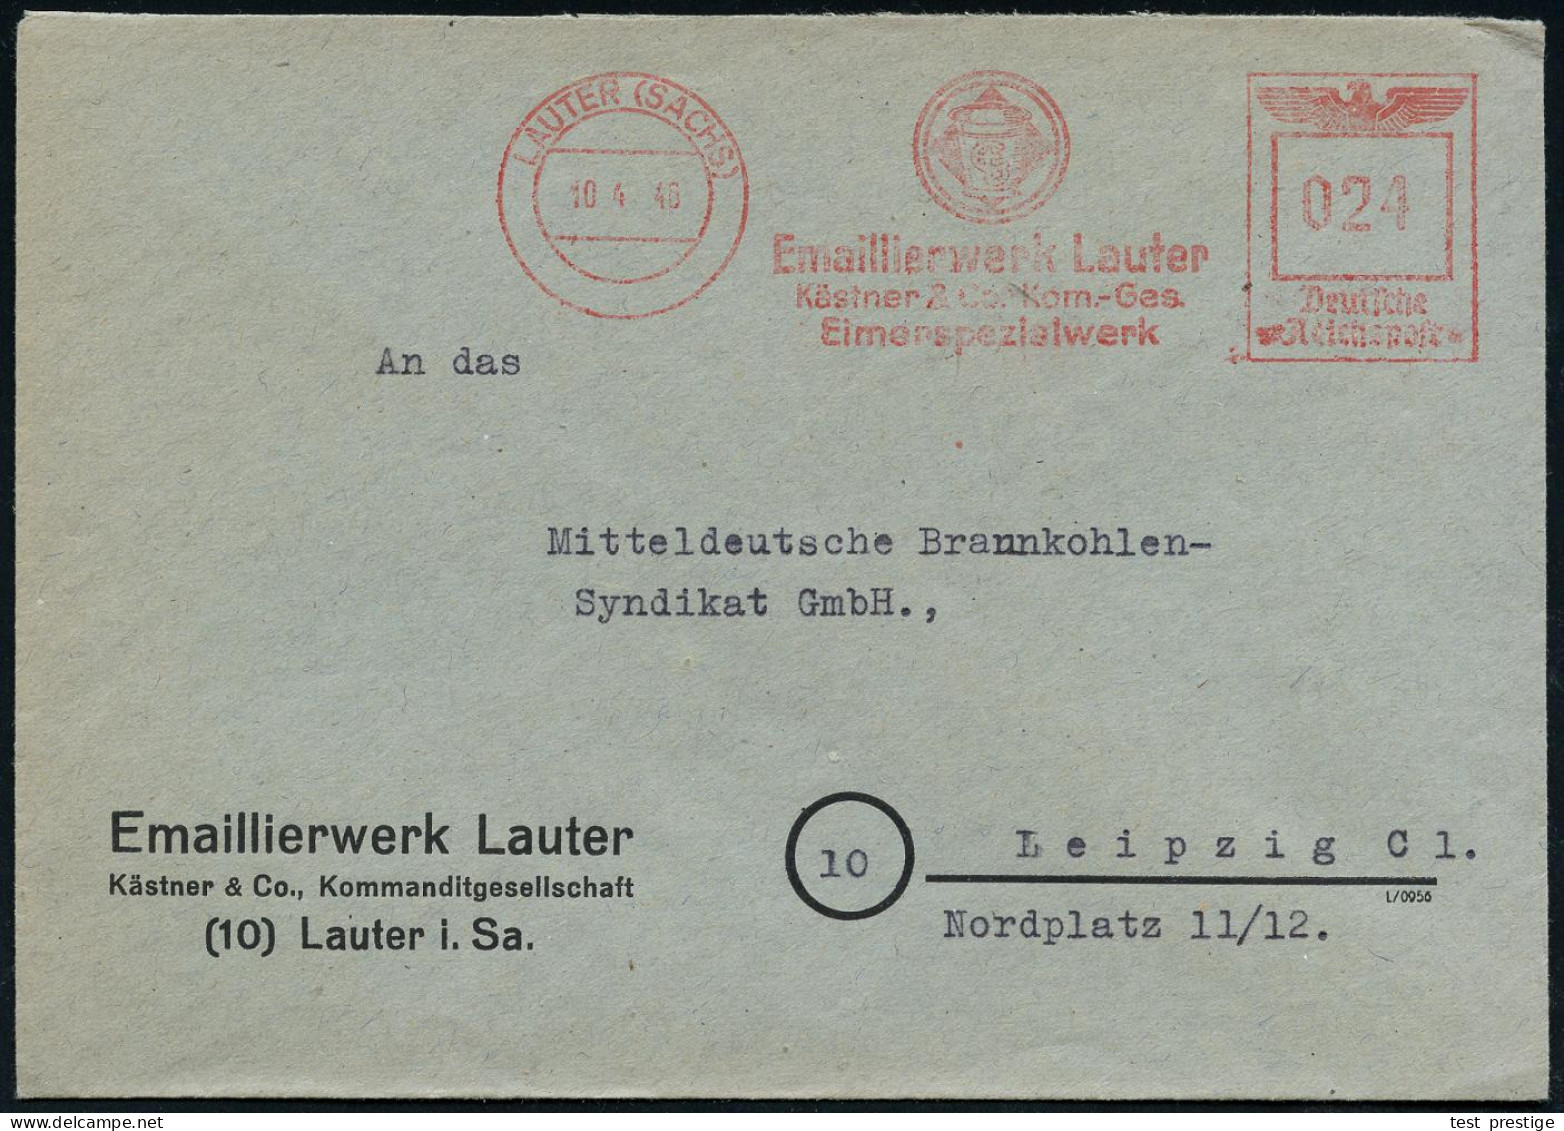 LAUTER (SACHS)/ Emaillierwerk Lauter/ Kästner & Co, Kom.-Ges./ Eimerspezialwerk 1946 (10.4.) Seltener AFS Francotyp "Rei - Chemie